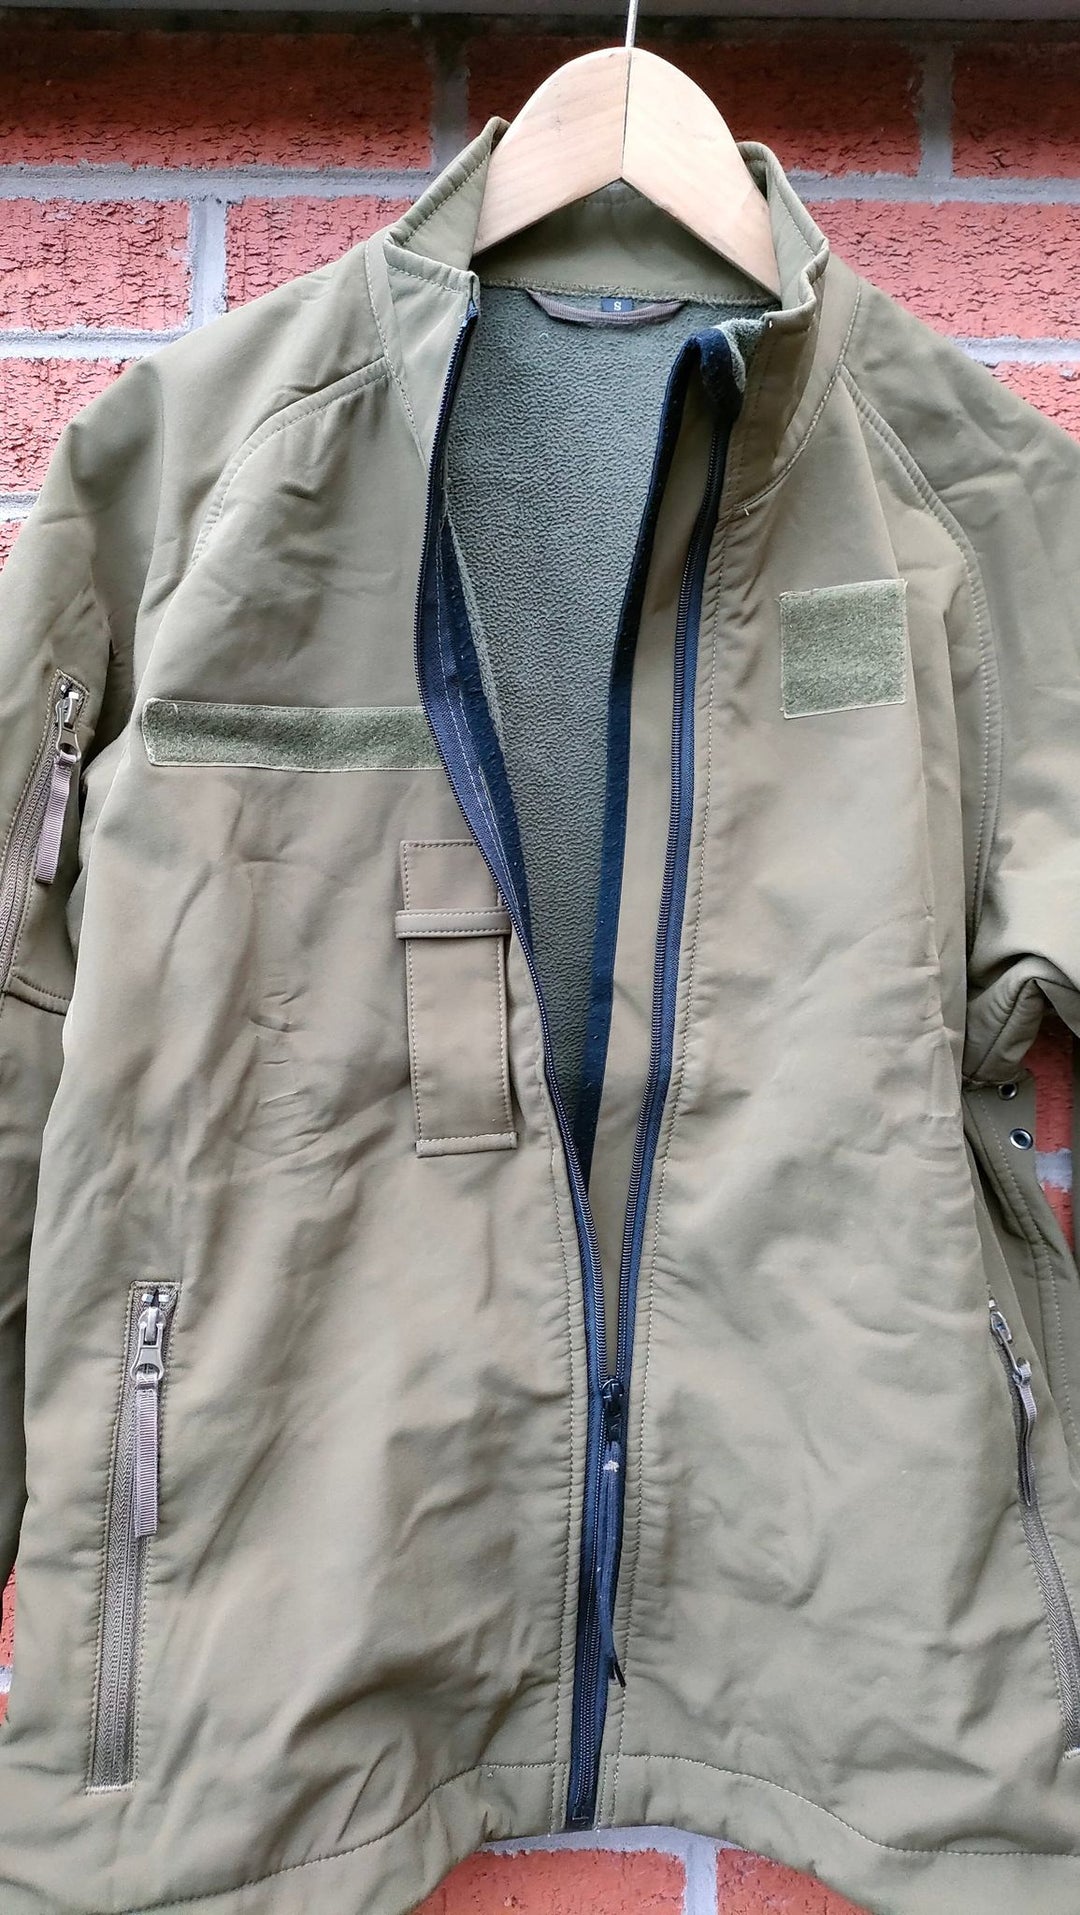 Jacket with open zip